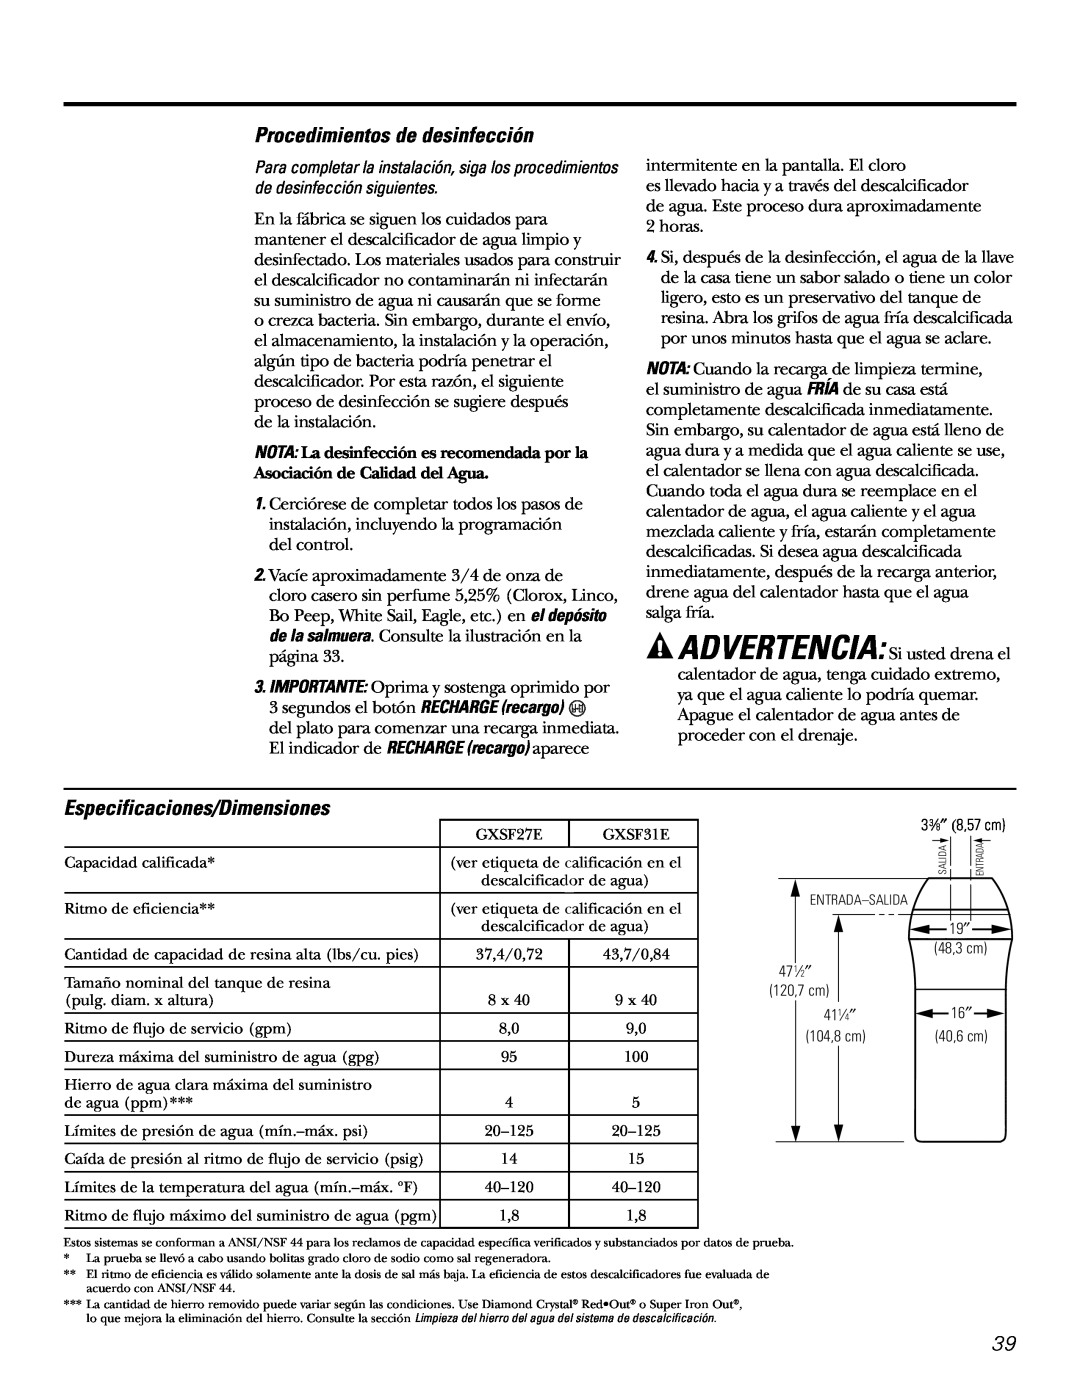 GE GXSF31E installation instructions Procedimientos de desinfección, Especificaciones/Dimensiones 